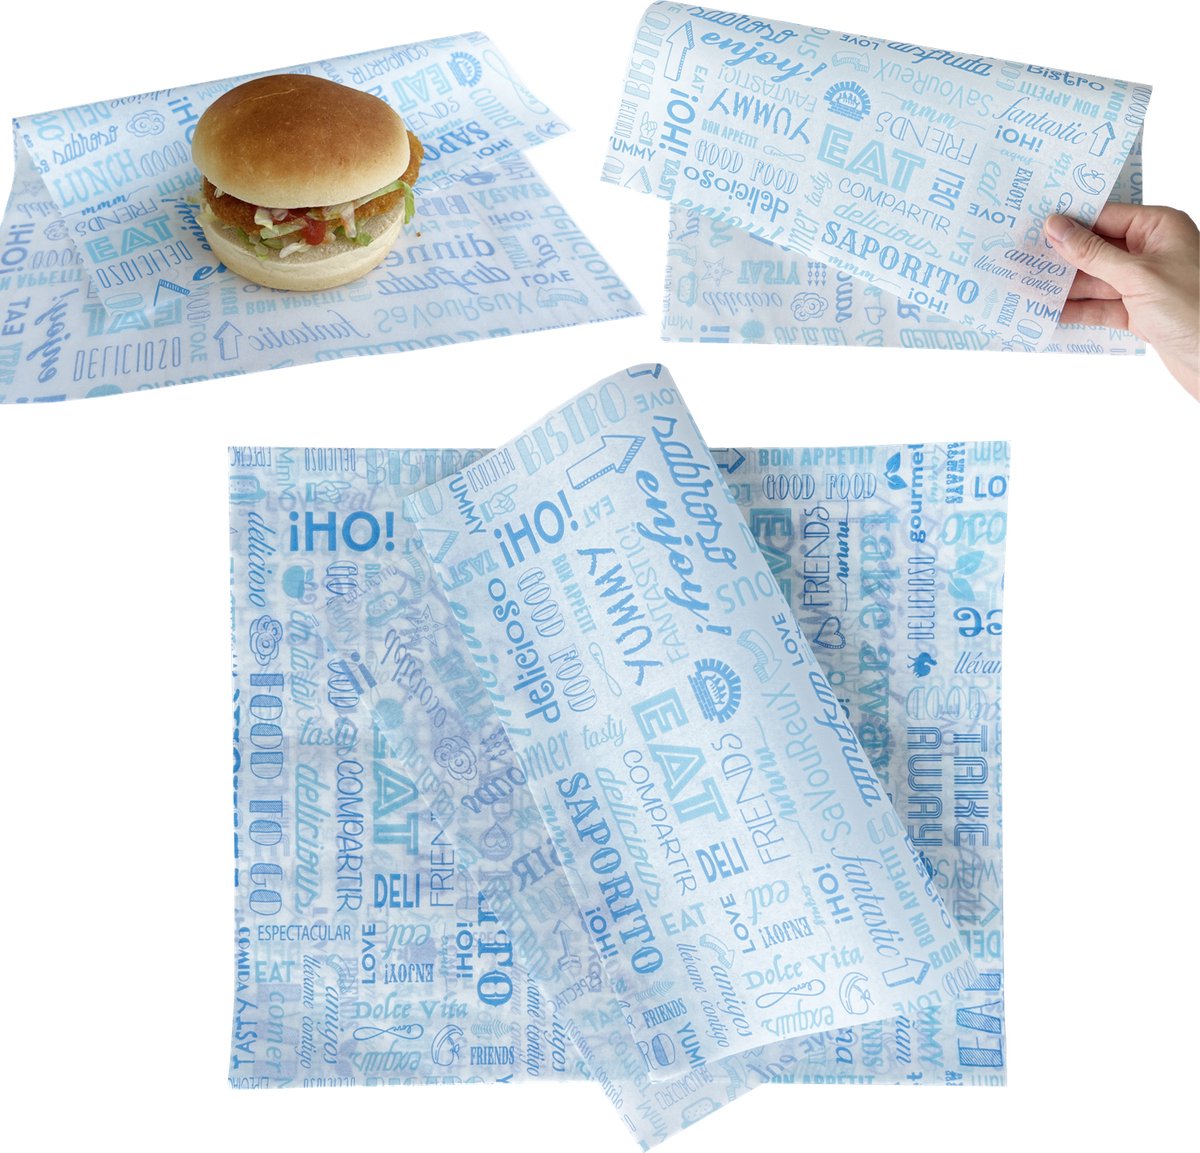 Rainbecom - 28 x 34 cm - 50 Stuks - Hamburger Vetvrij Papier - Duurzaam - Vocht en Vetbestendig - Papieren voor Sandwiches, Hamburgers, Snacks